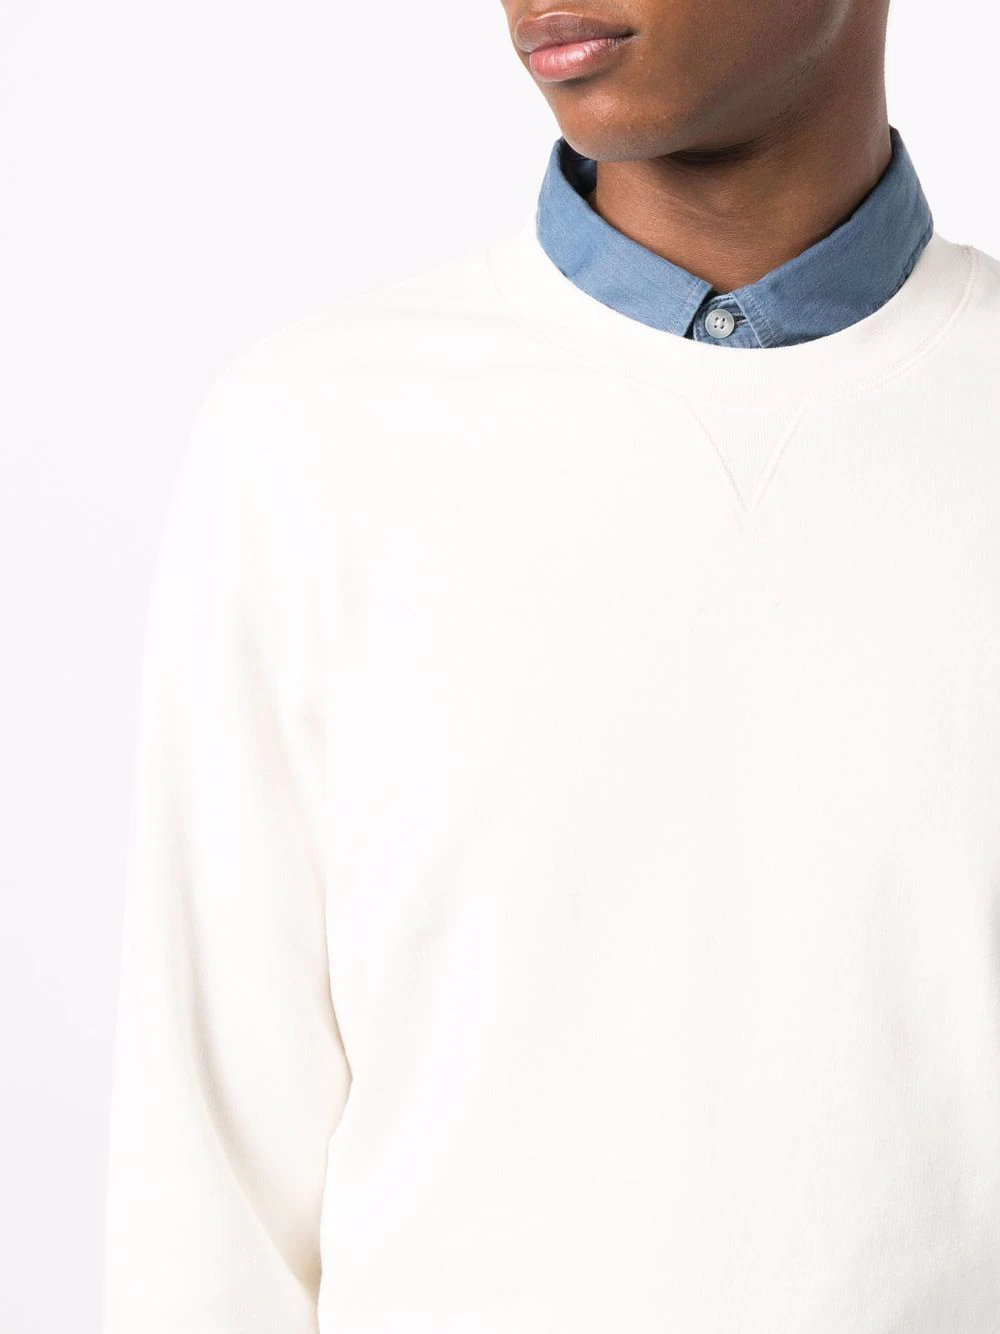 Round neck sweatshirt